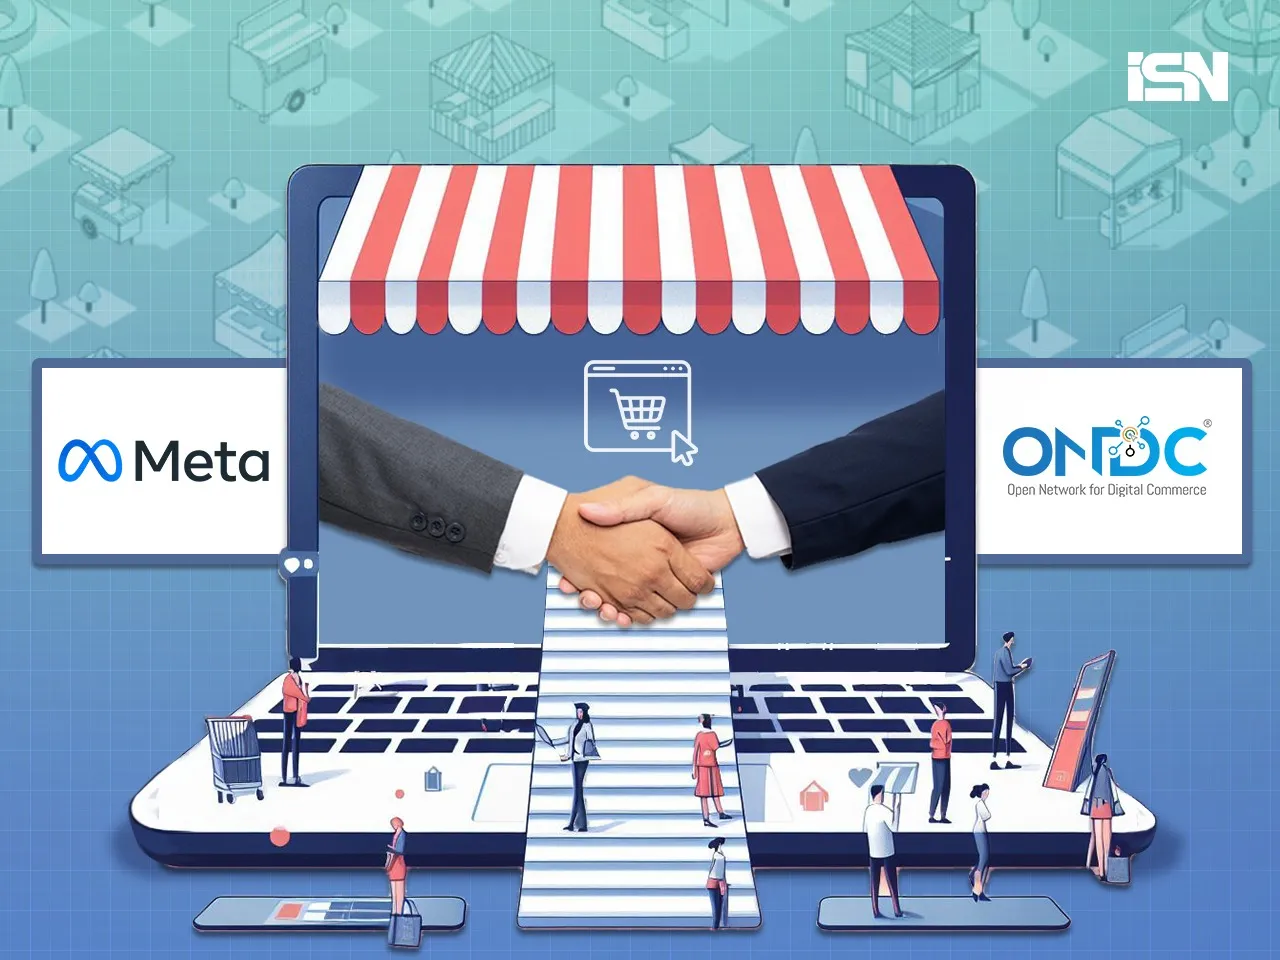 Meta partners with ONDC